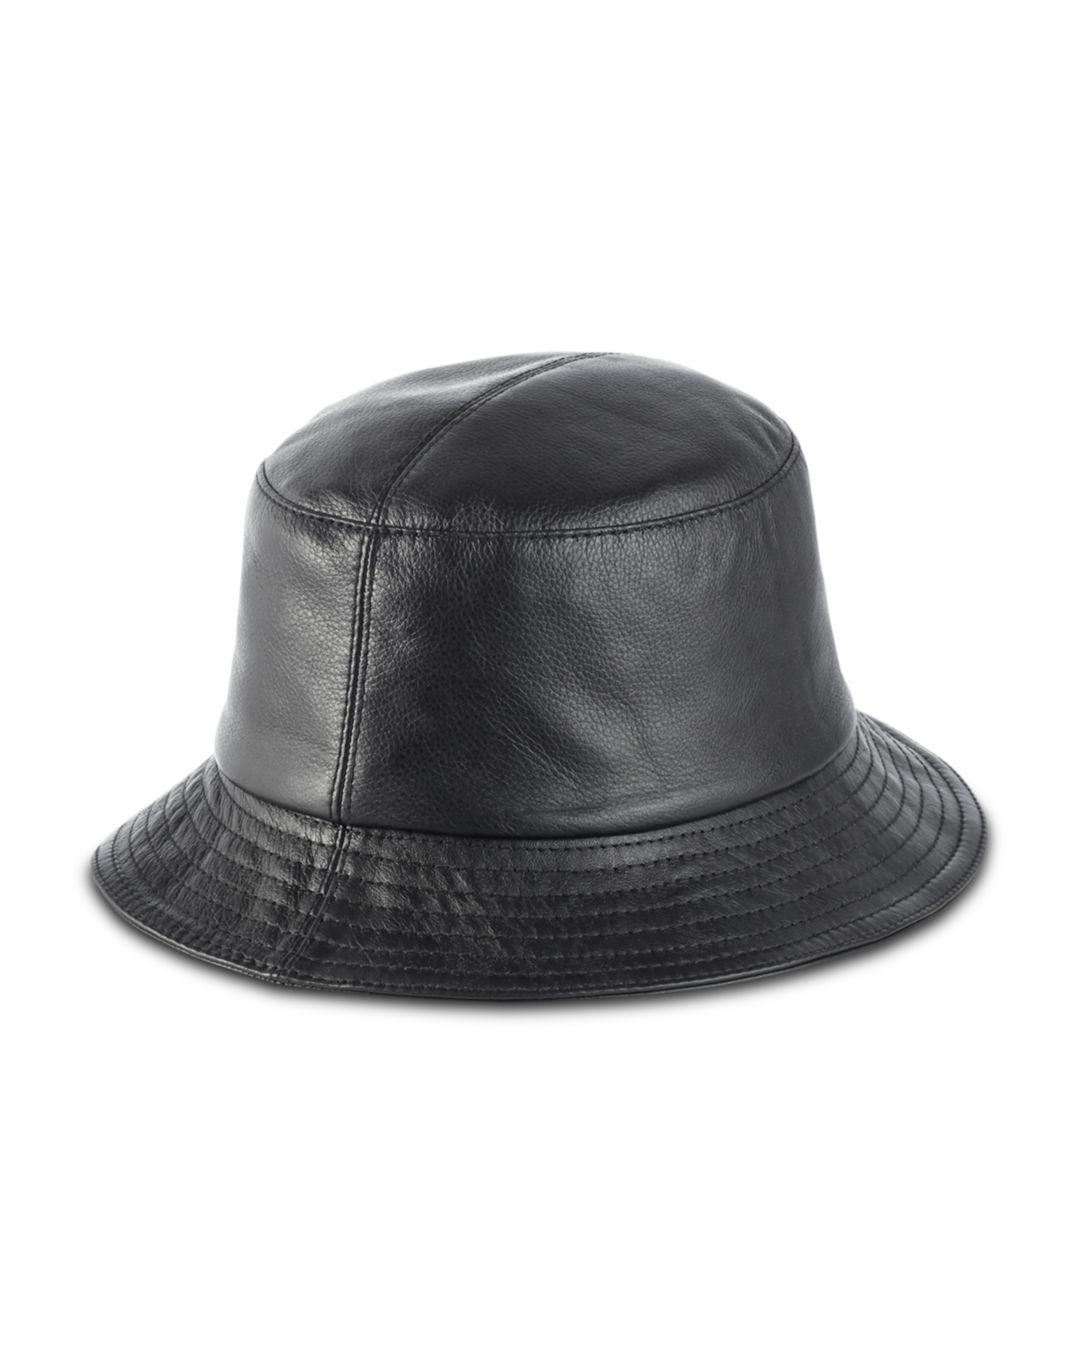 Helen Kaminski Oriel Leather Bucket Hat in Black - Lyst